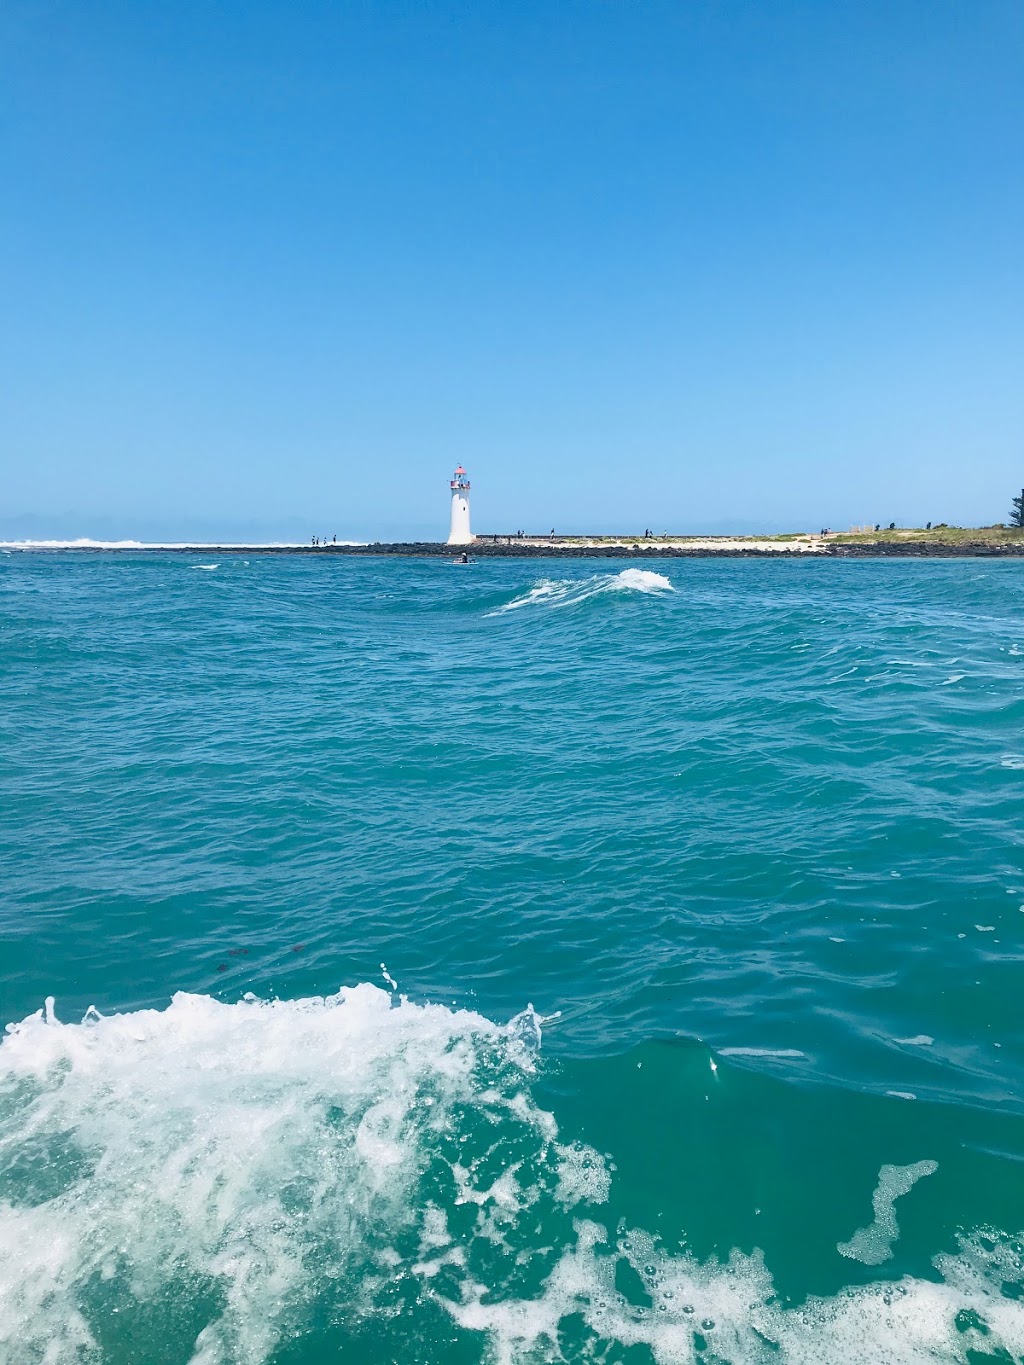 Port Fairy Lighthouse On Griffiths Island | Port Fairy VIC 3284, Australia | Phone: 1300 656 564